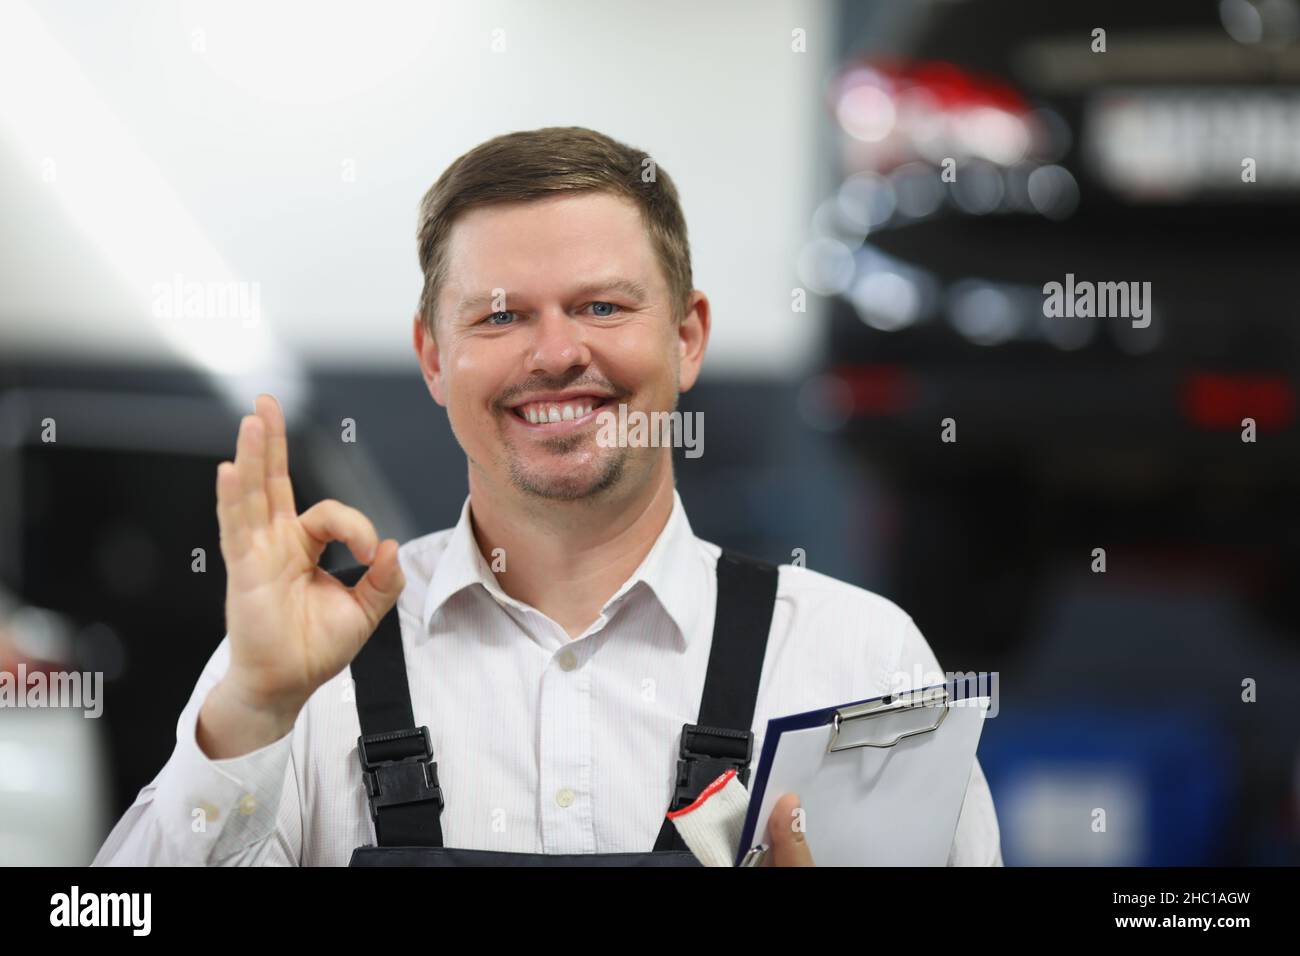 Der Mitarbeiter des Reparaturdienstes zeigt eine gute Geste mit der Hand und lächelt Stockfoto